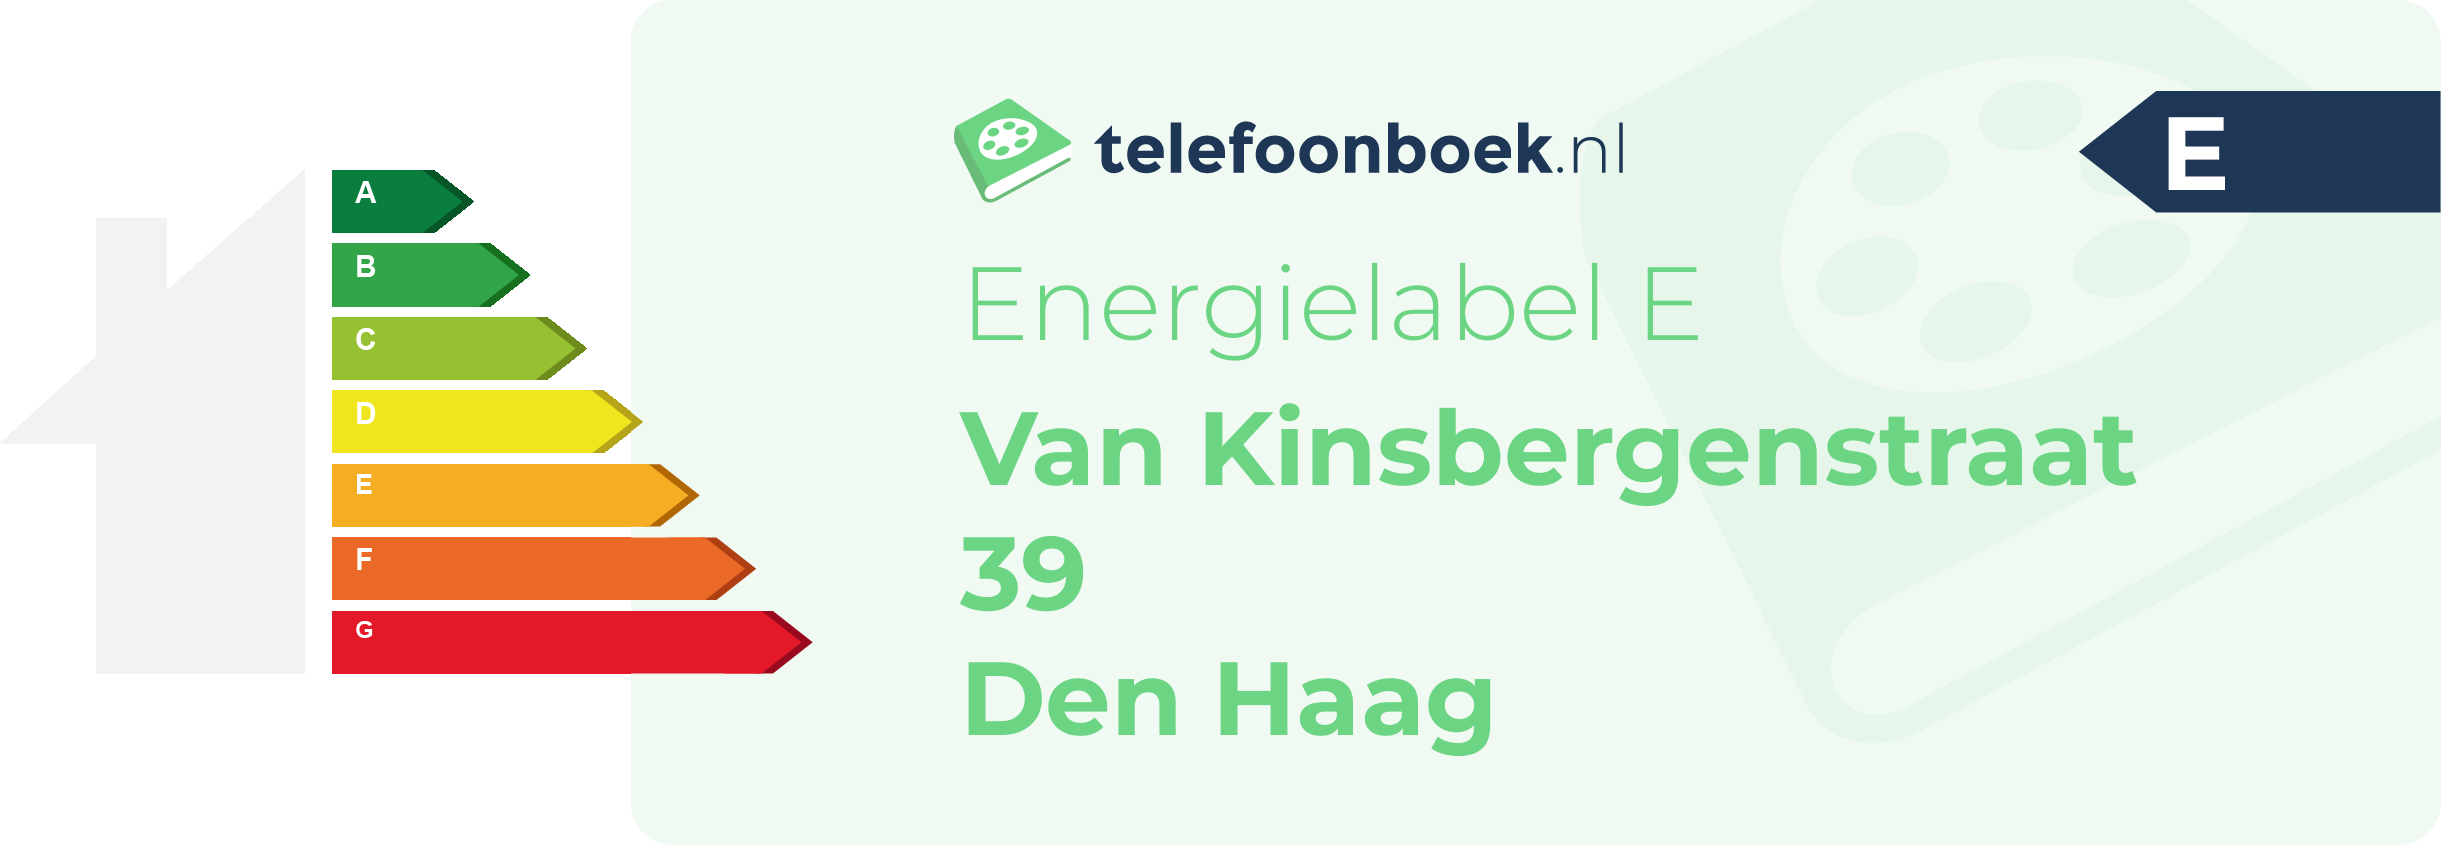 Energielabel Van Kinsbergenstraat 39 Den Haag